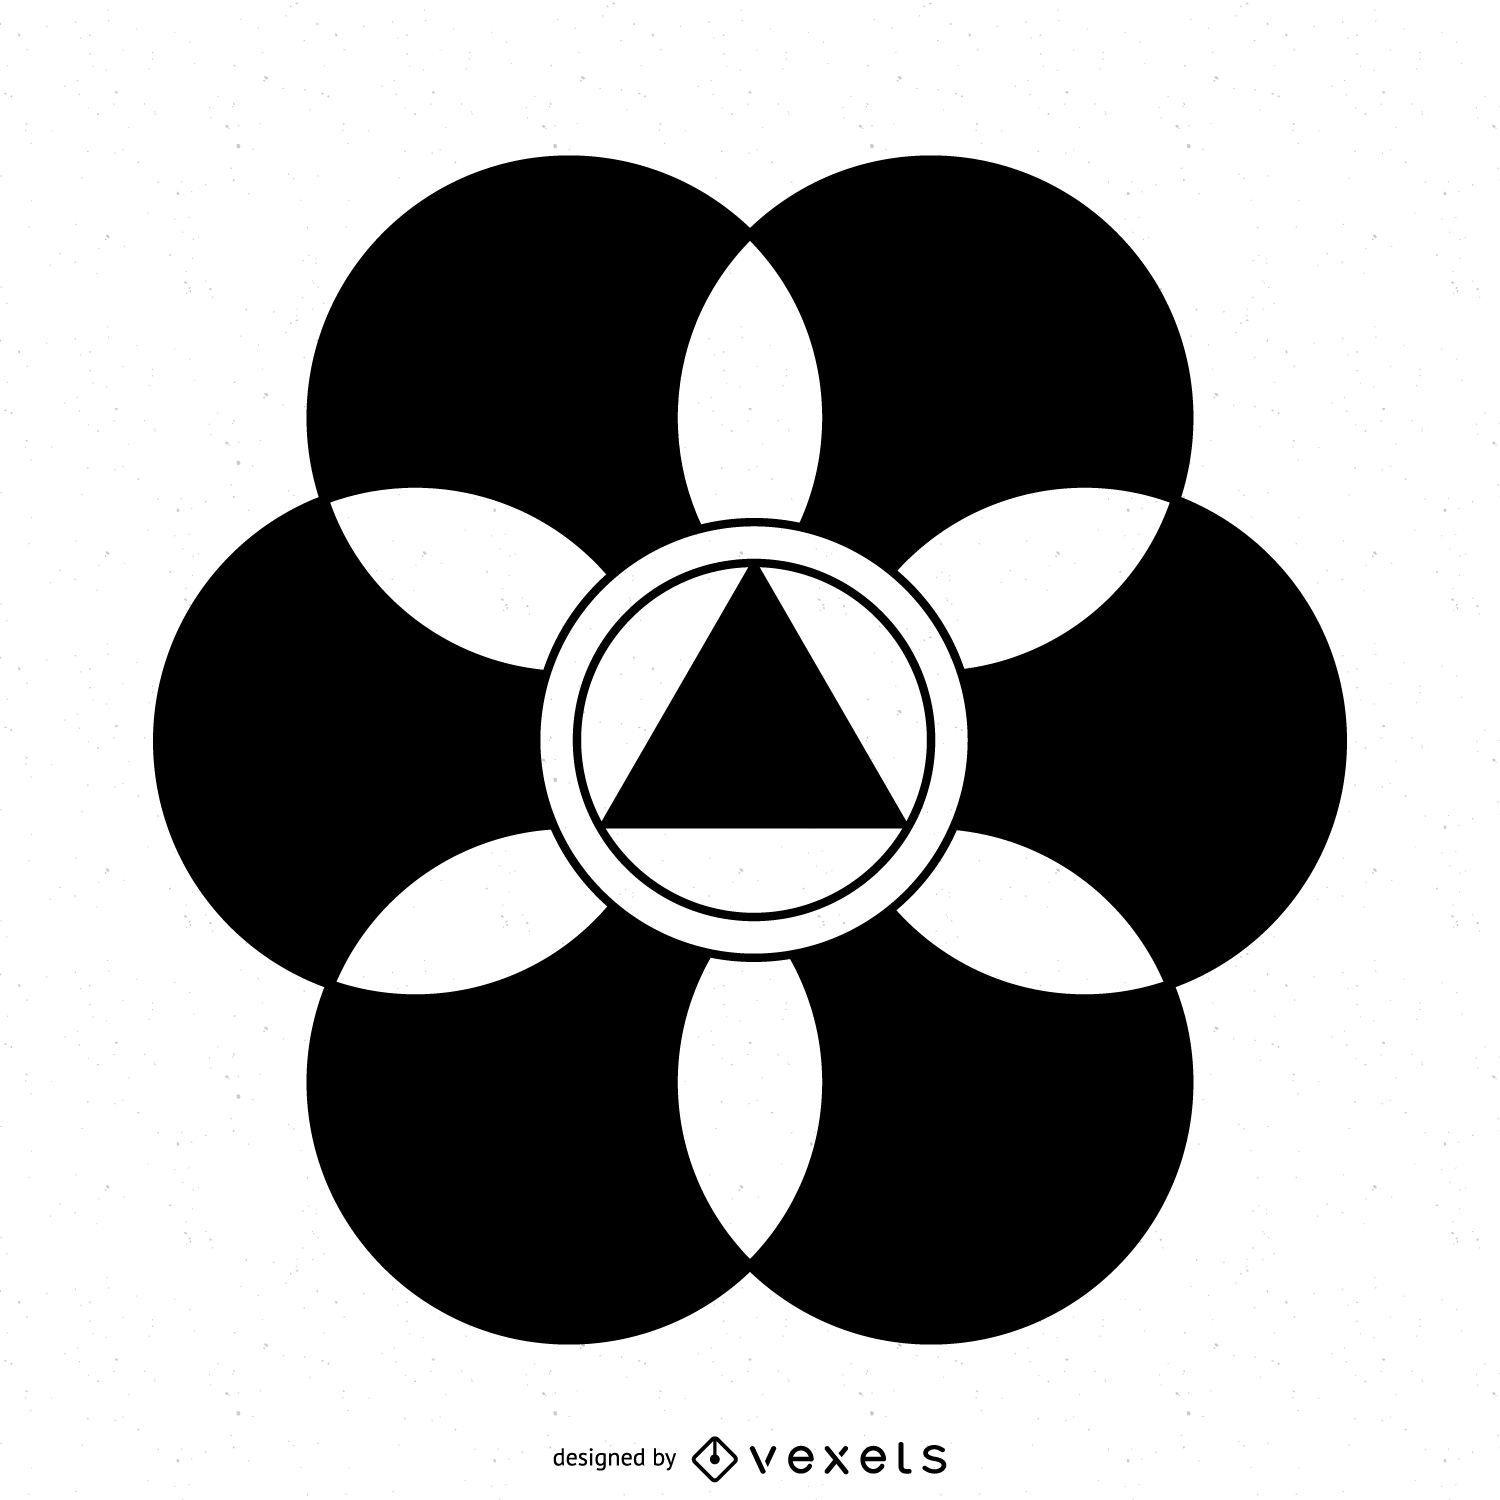 lv logo flower